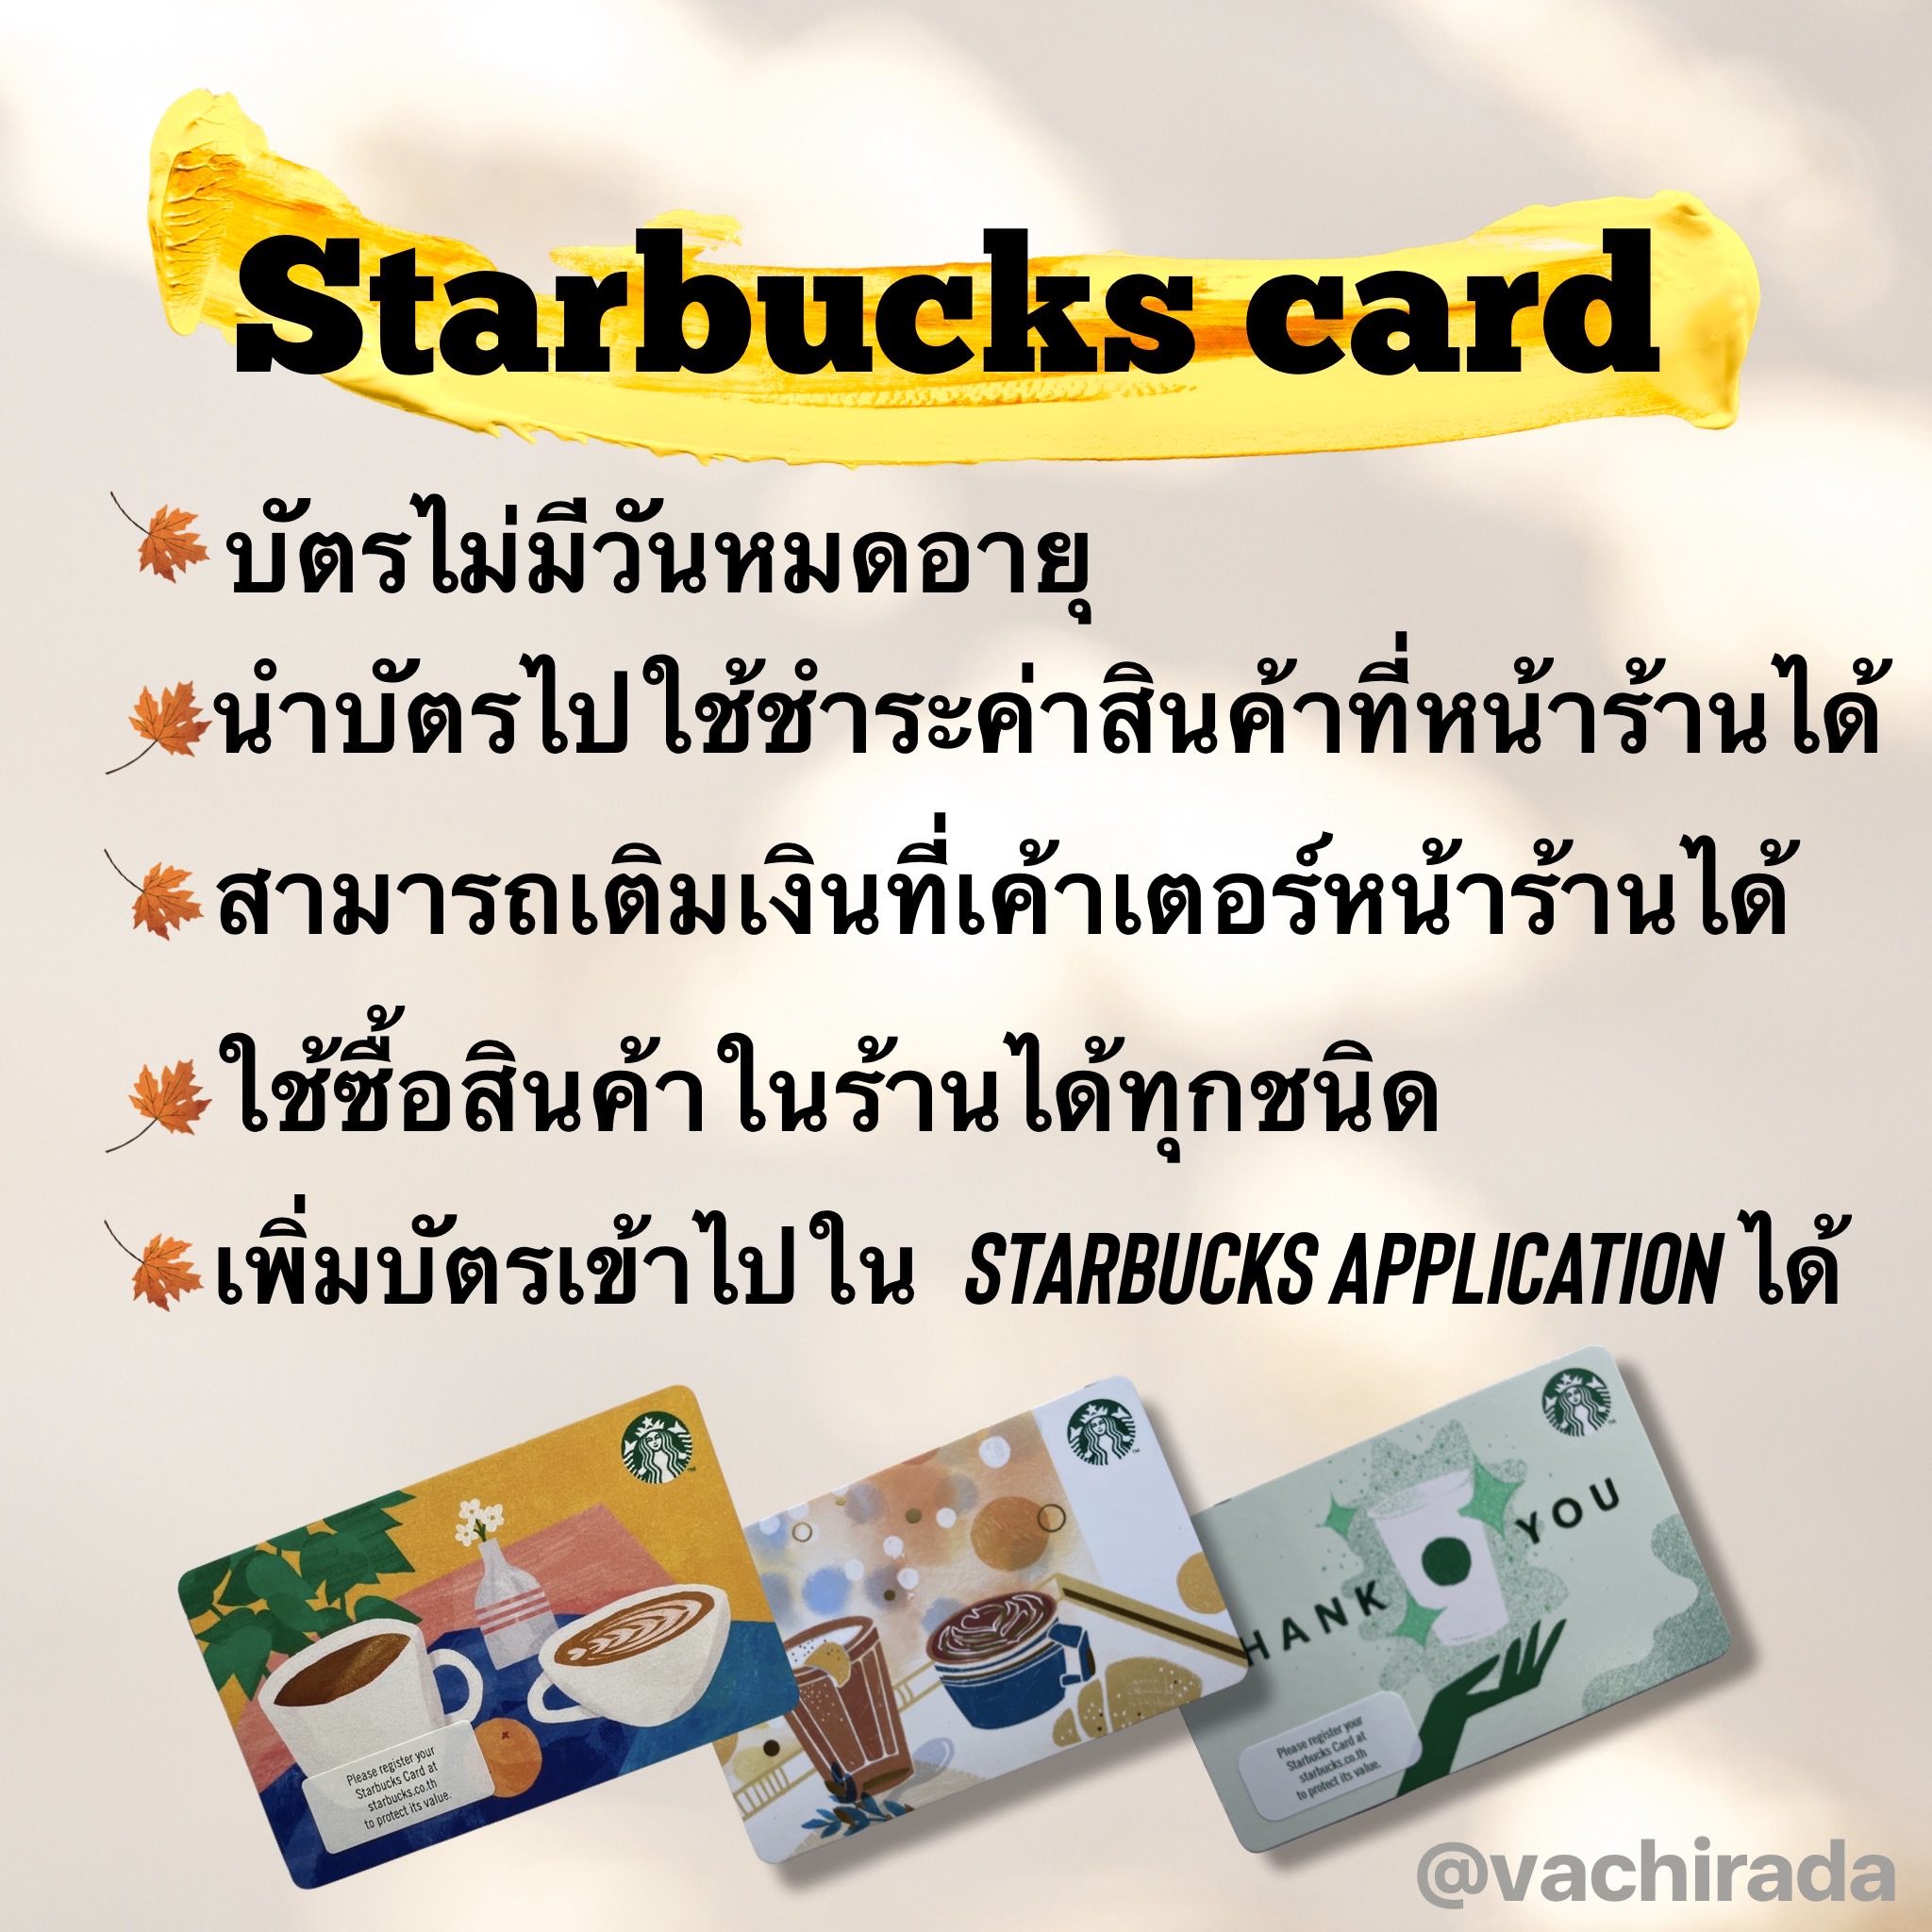 รูปภาพเพิ่มเติมเกี่ยวกับ Starbucks card มูลค่า 1000 บาท (ส่งบัตรจริง/ไม่ส่งเลขหลังบัตร)